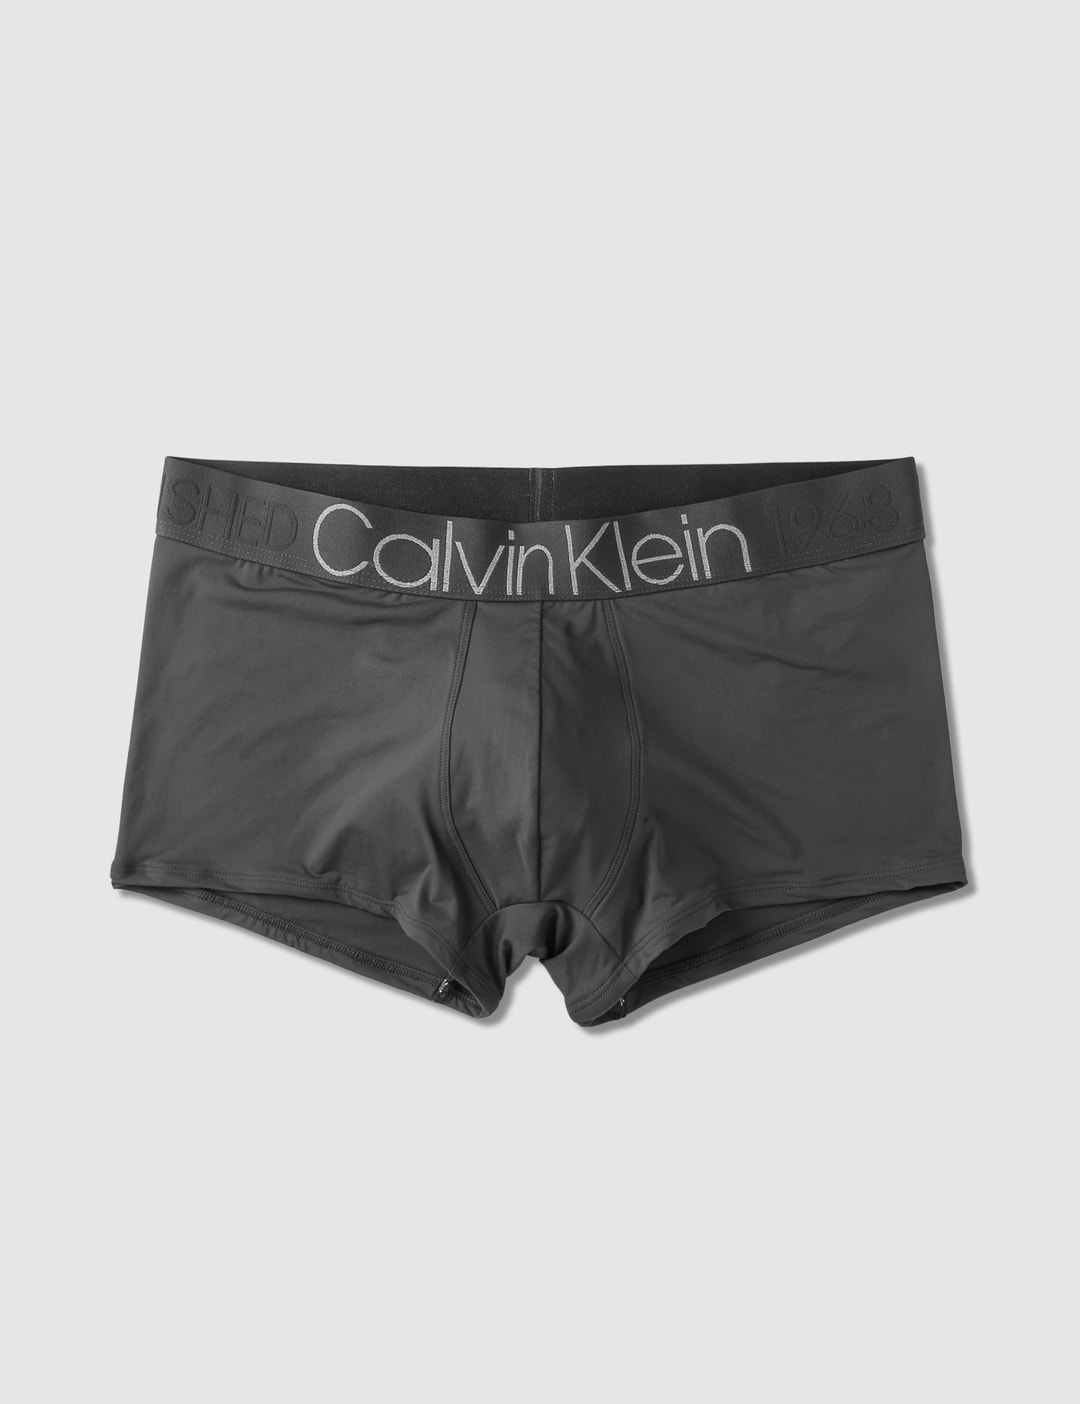 Calvin Klein Underwear - Evolution Micro Low Rise Trunk